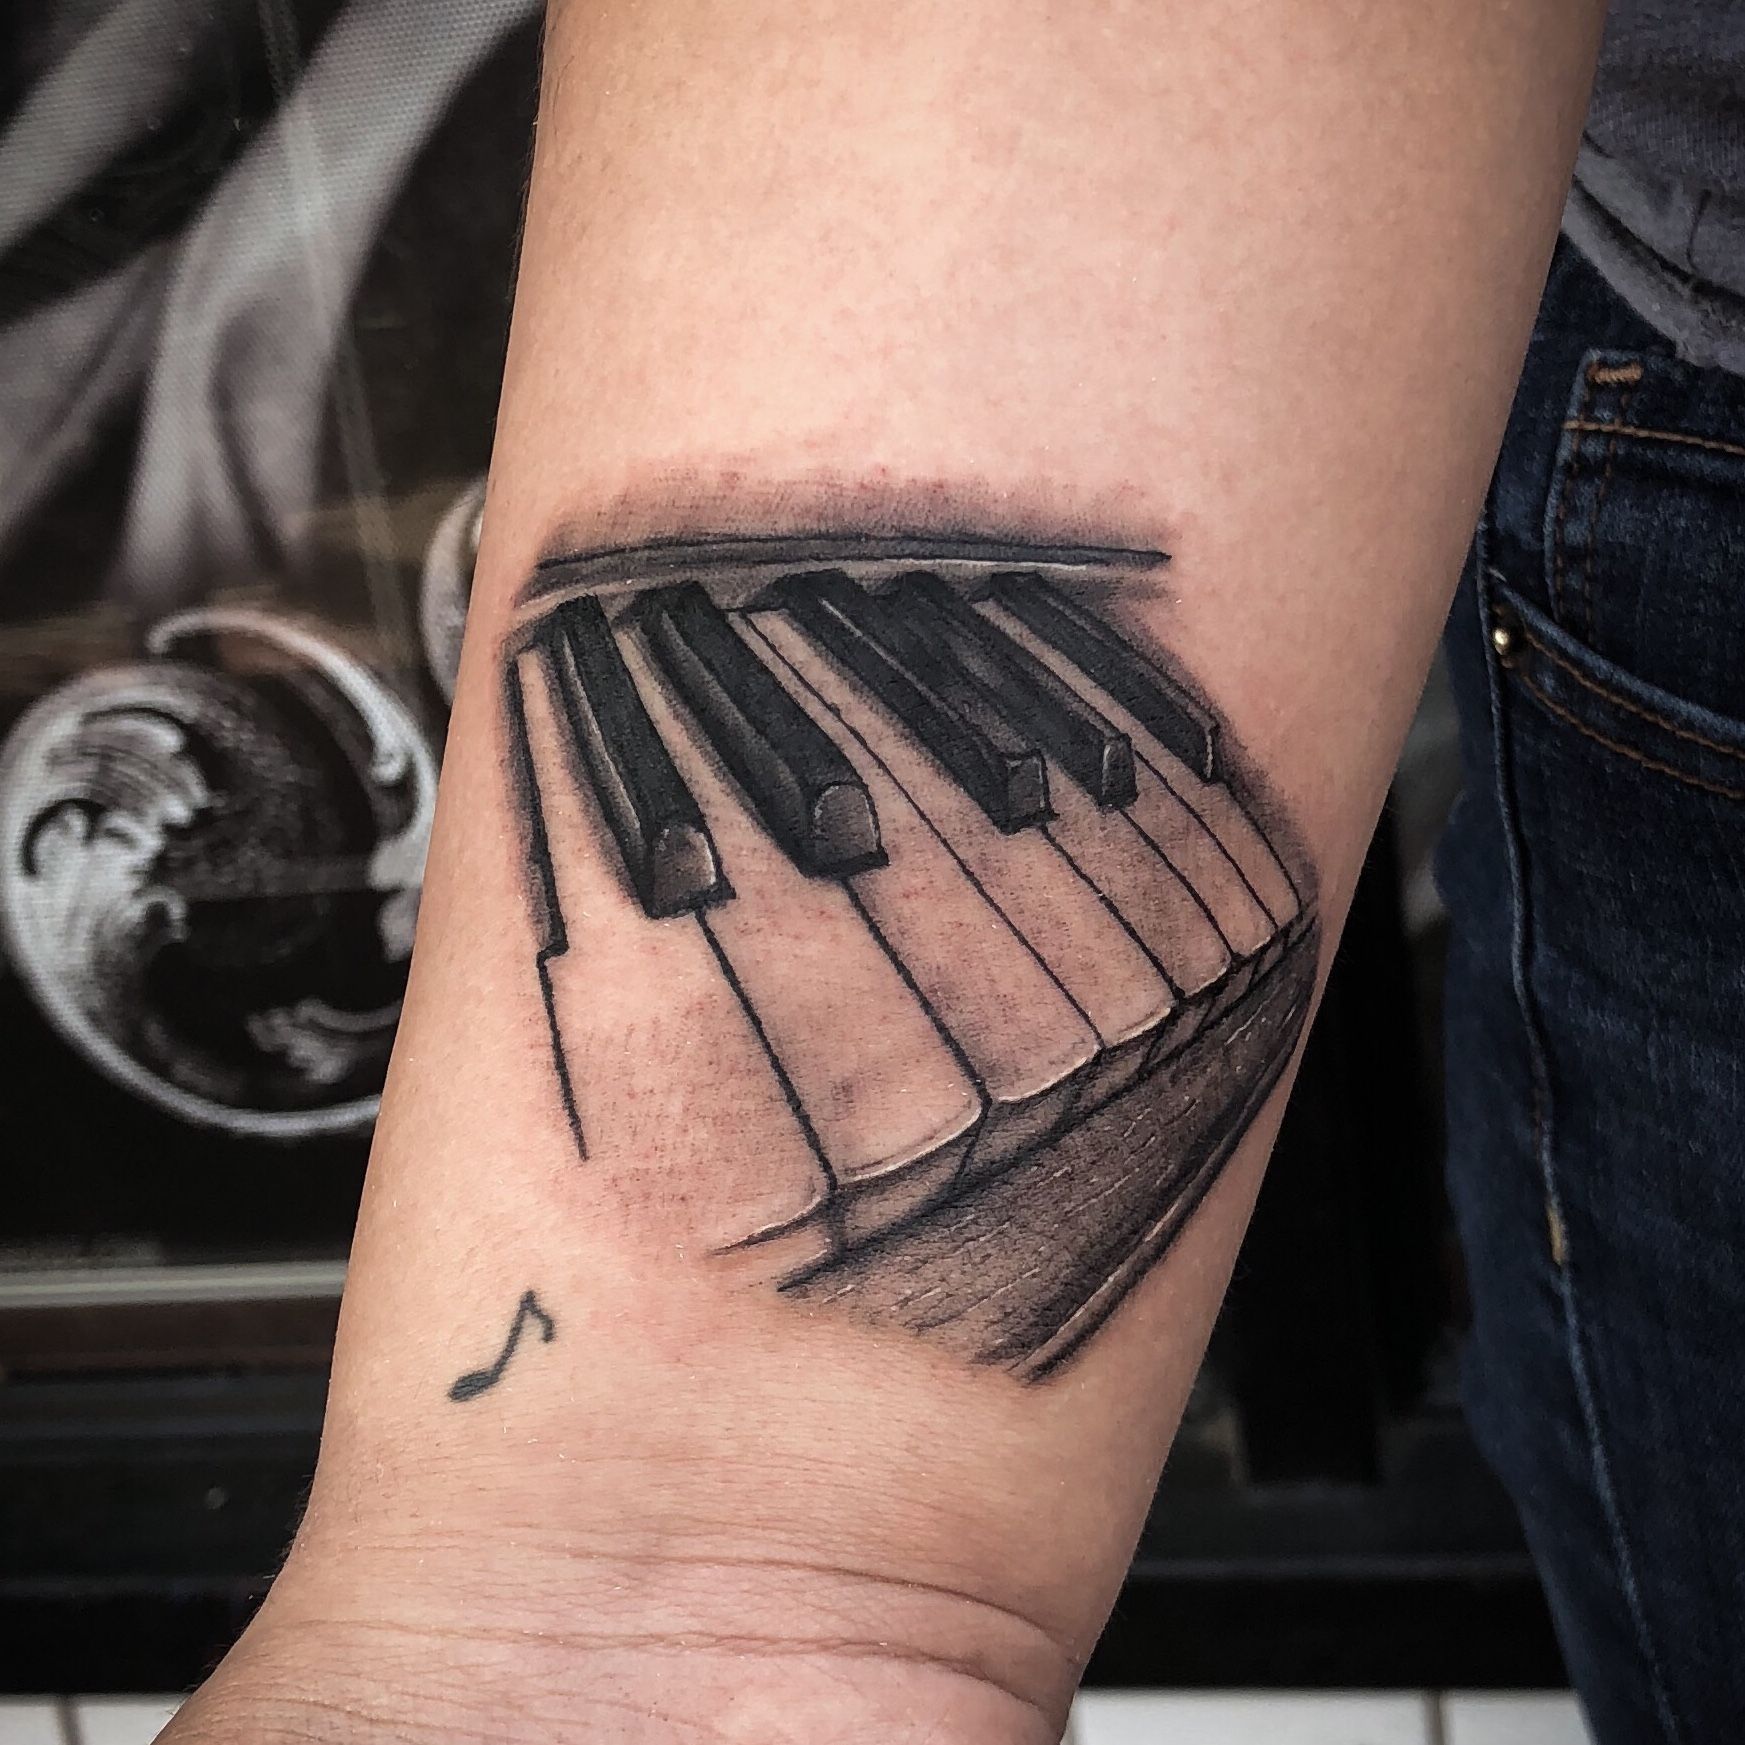 Minimalist Piano Tattoo on Arm | Discreet tattoos, Piano tattoo, Music  tattoo designs